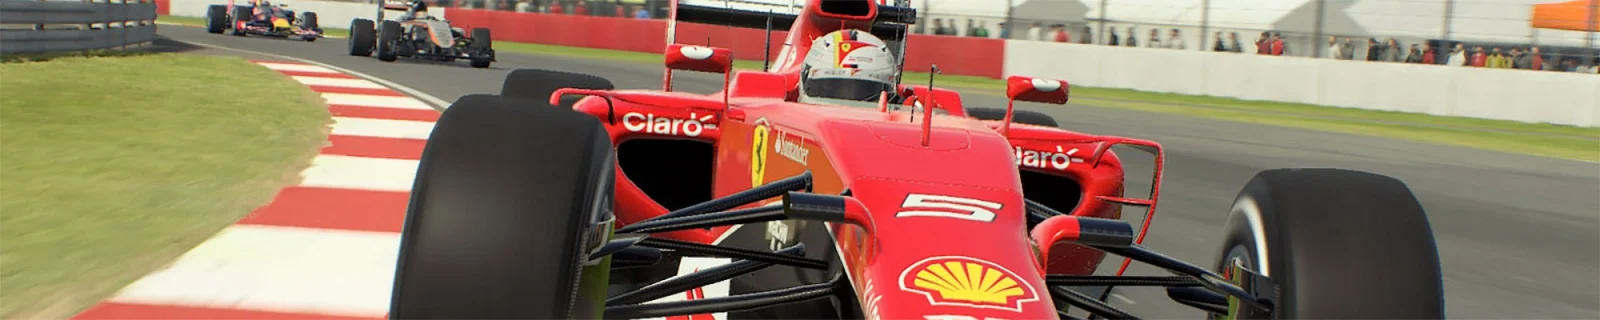 《F1 2015》国行简中版3月31日上市售199元